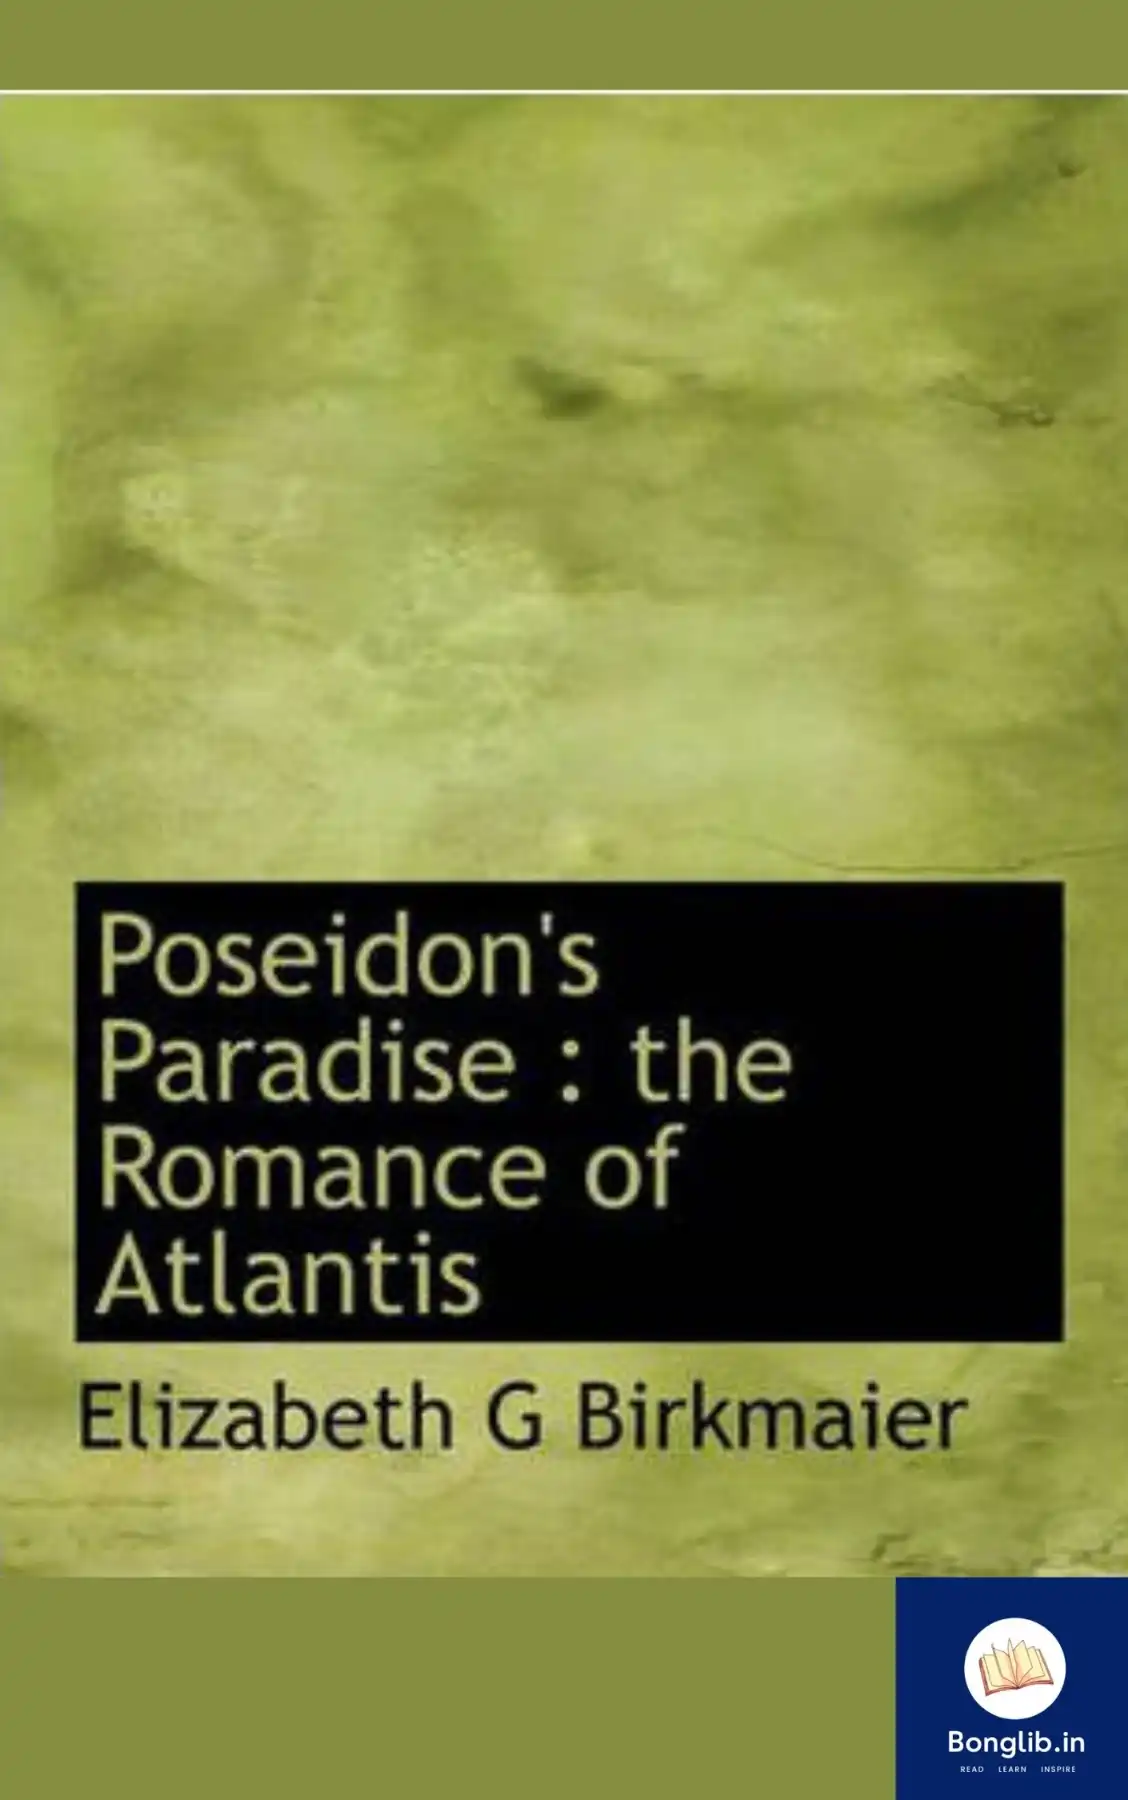 BooK cover ofPoseidon’s Paradise: The Romance of Atlantis